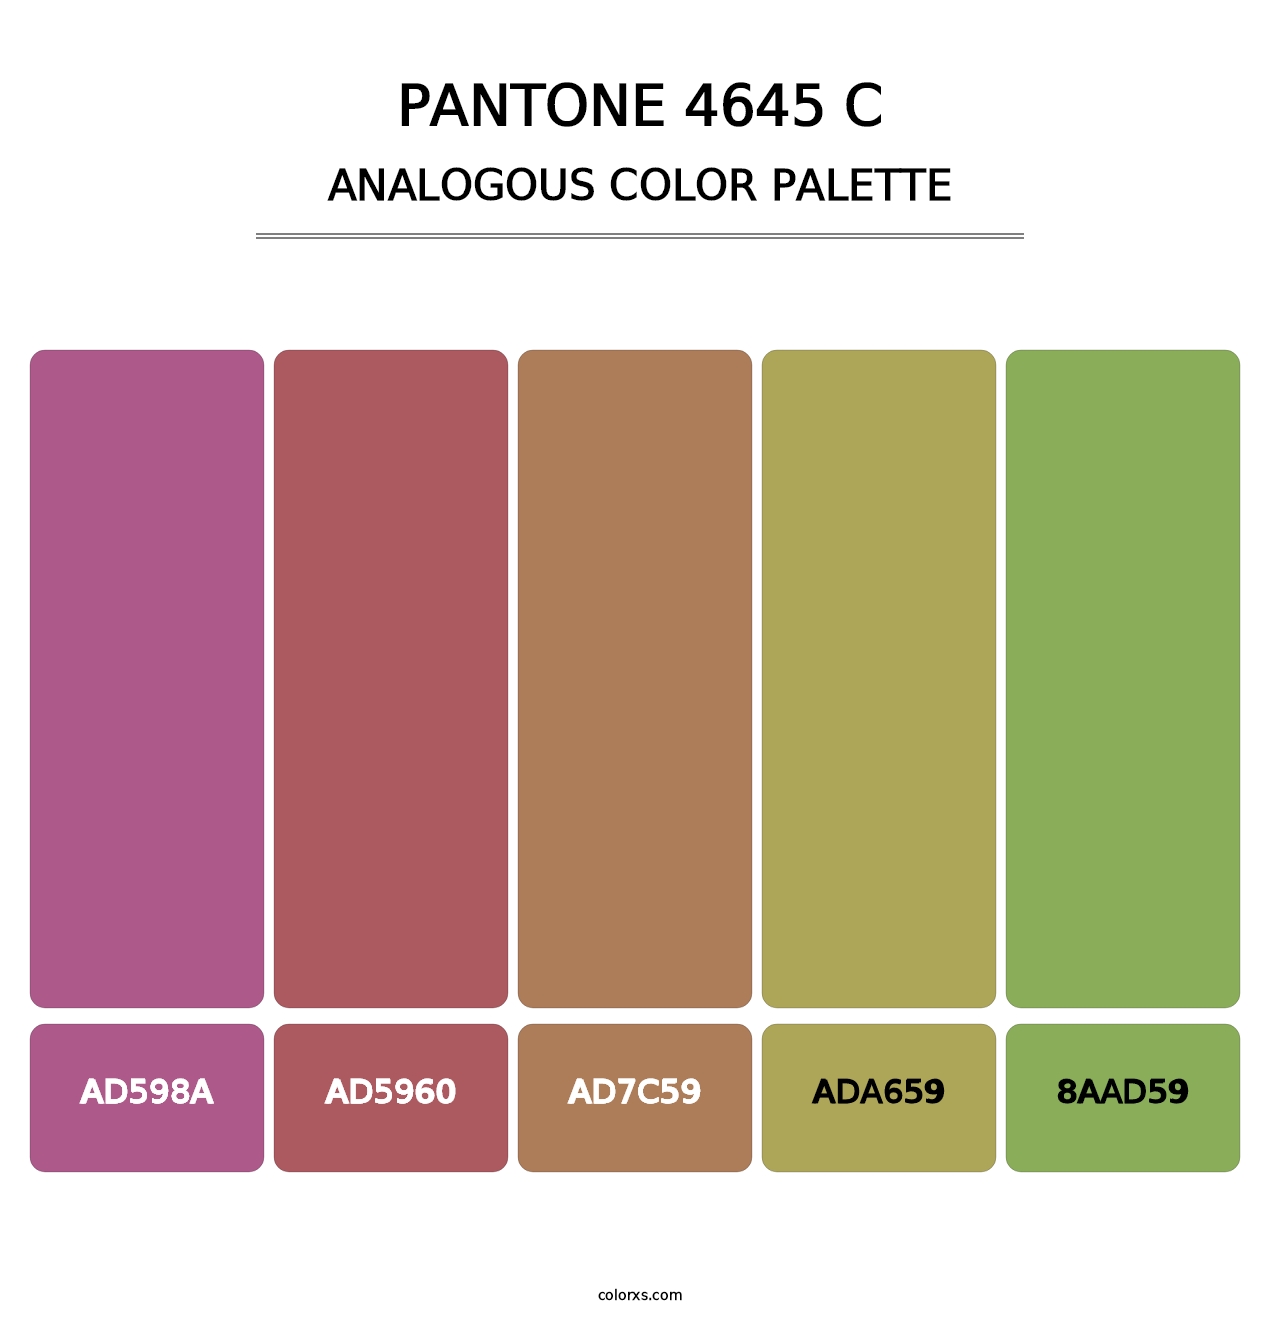 PANTONE 4645 C - Analogous Color Palette